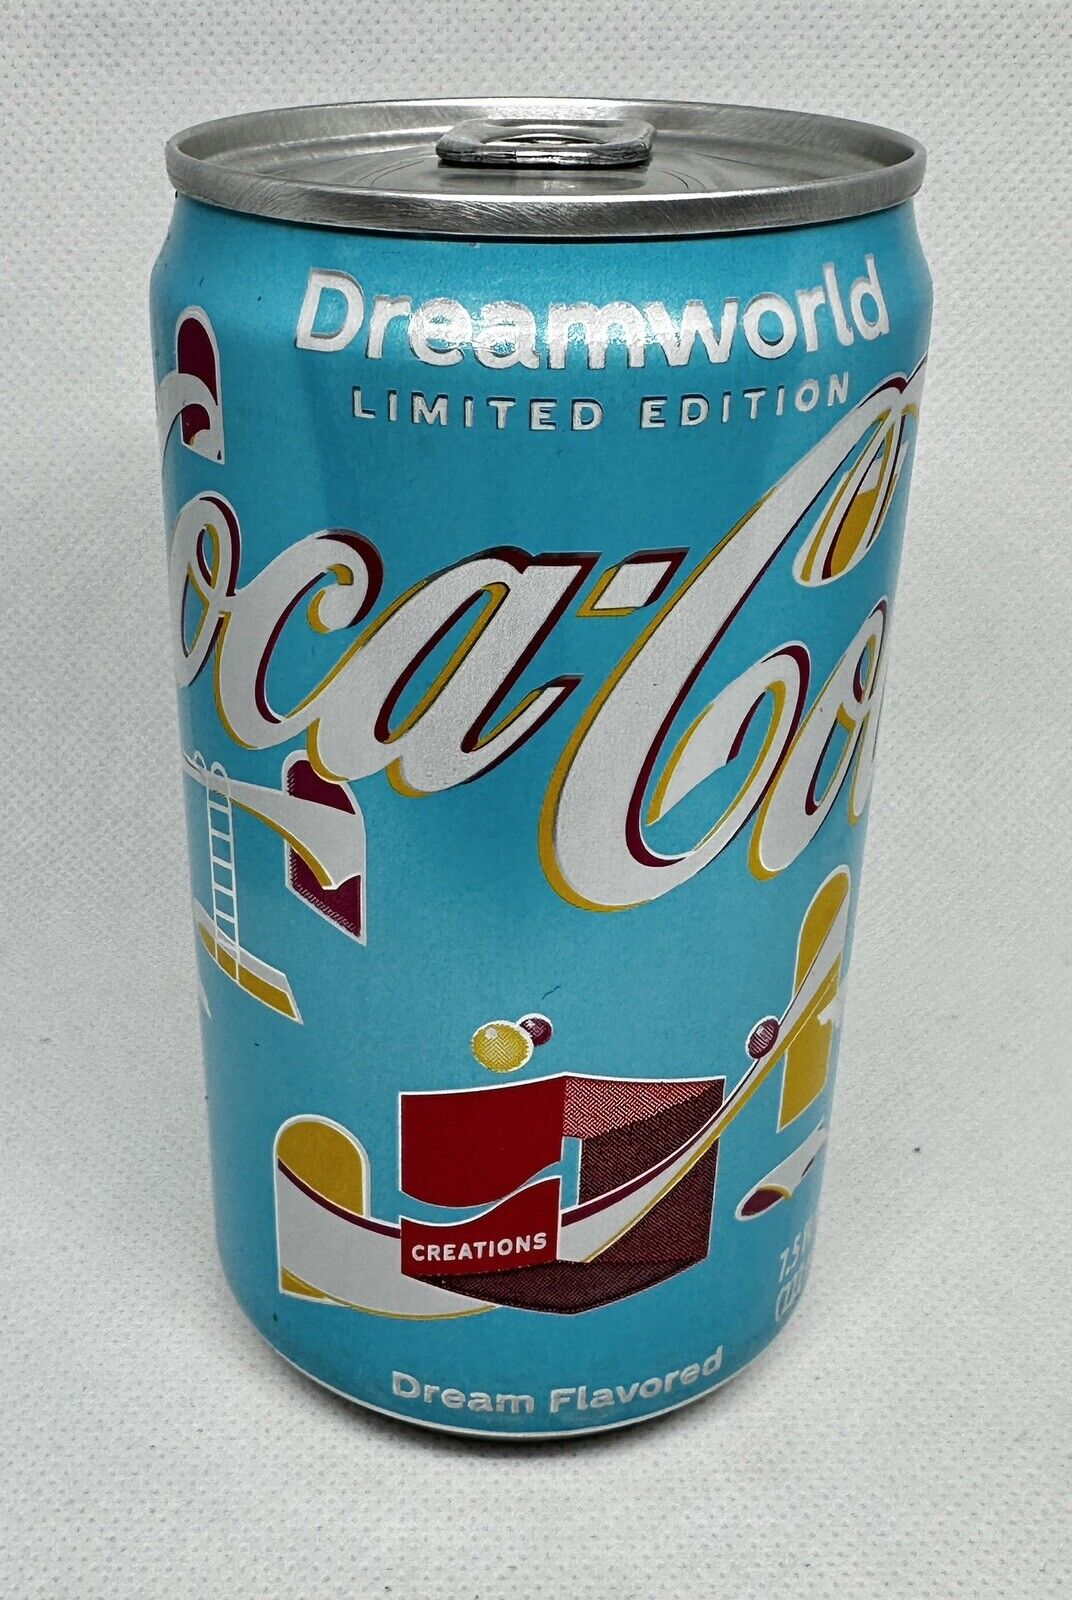 Limited Edition Coca-Cola Creations Dreamworld 7.5oz Can Coke